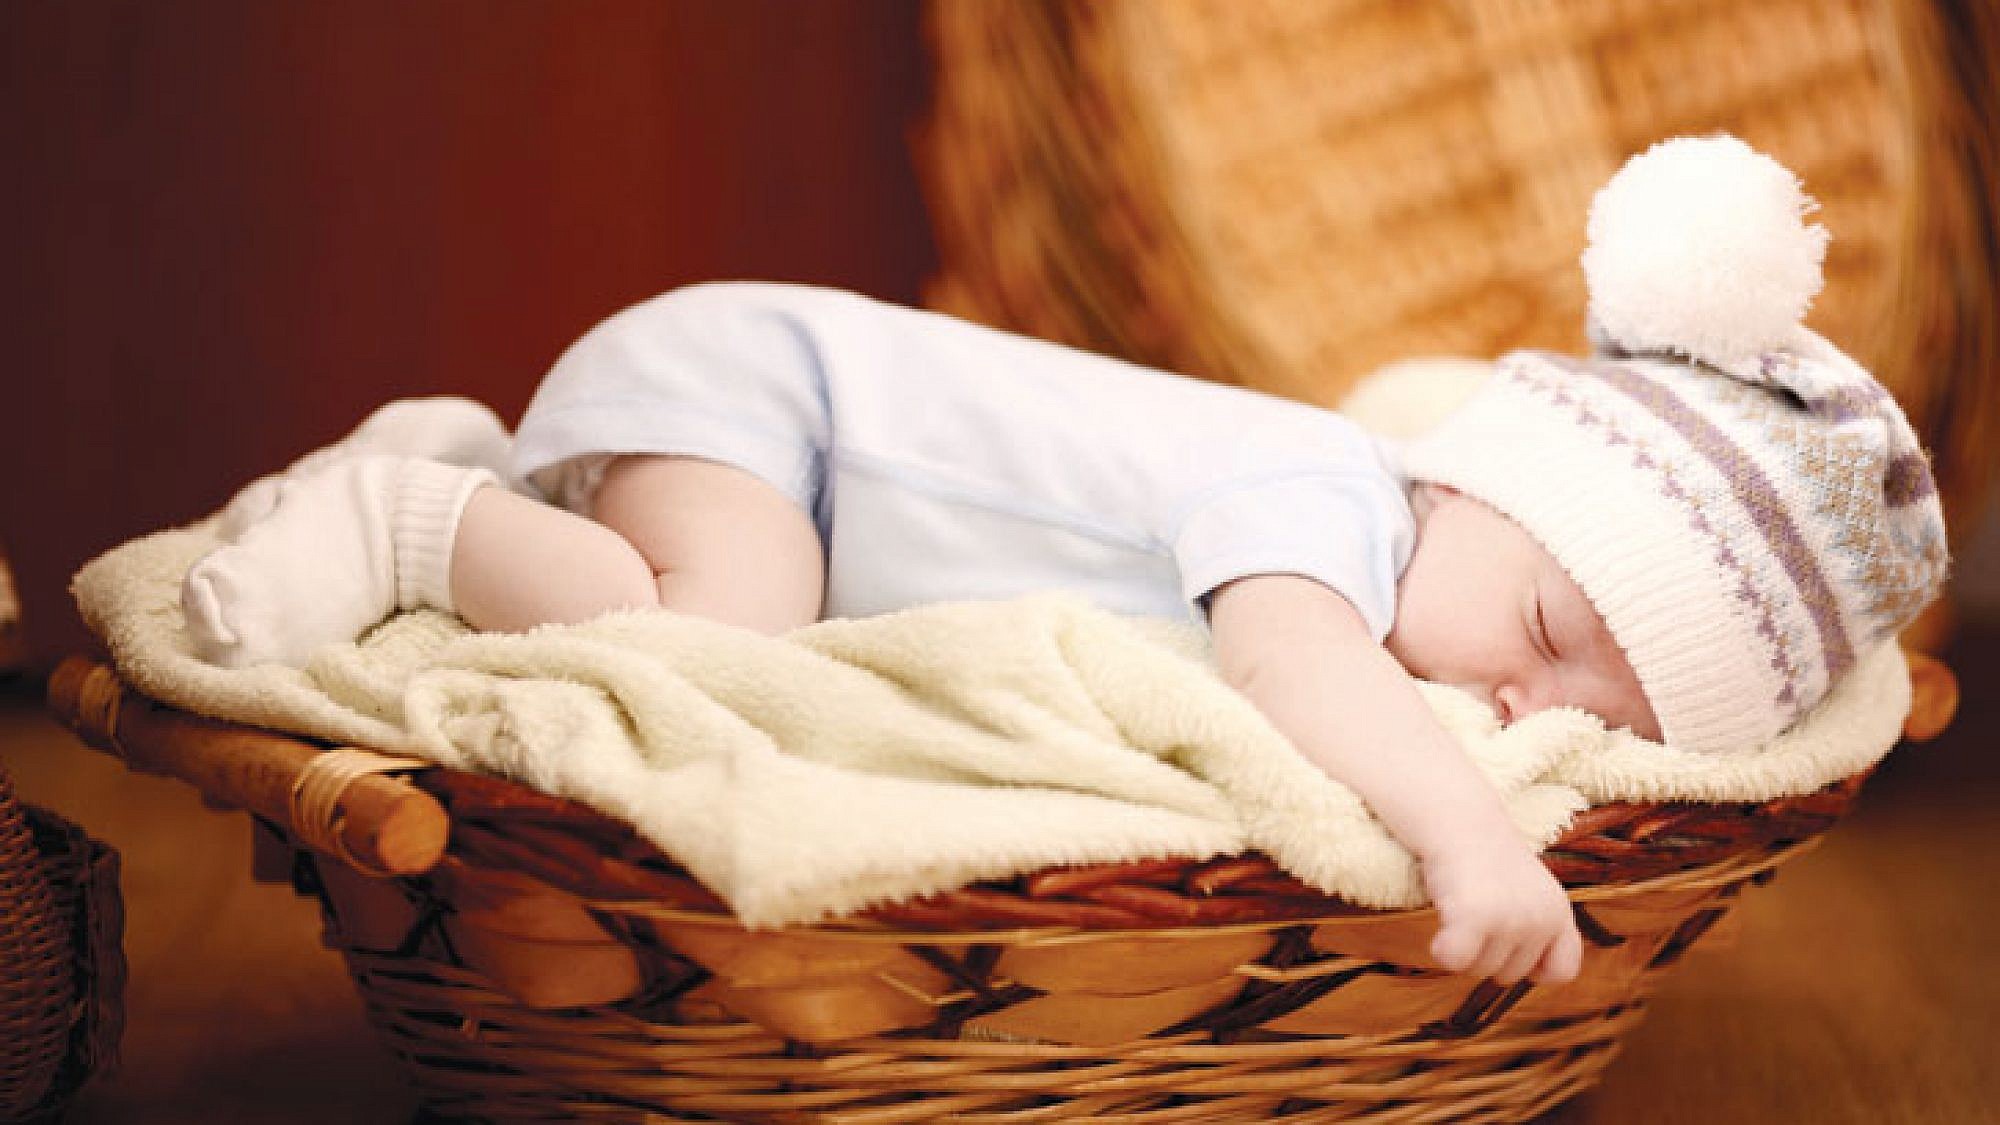 חשוב ללמד את התינוק להירדם בעצמו בלי תלות, בערב ובמהלך היום | צלם: shutterstock